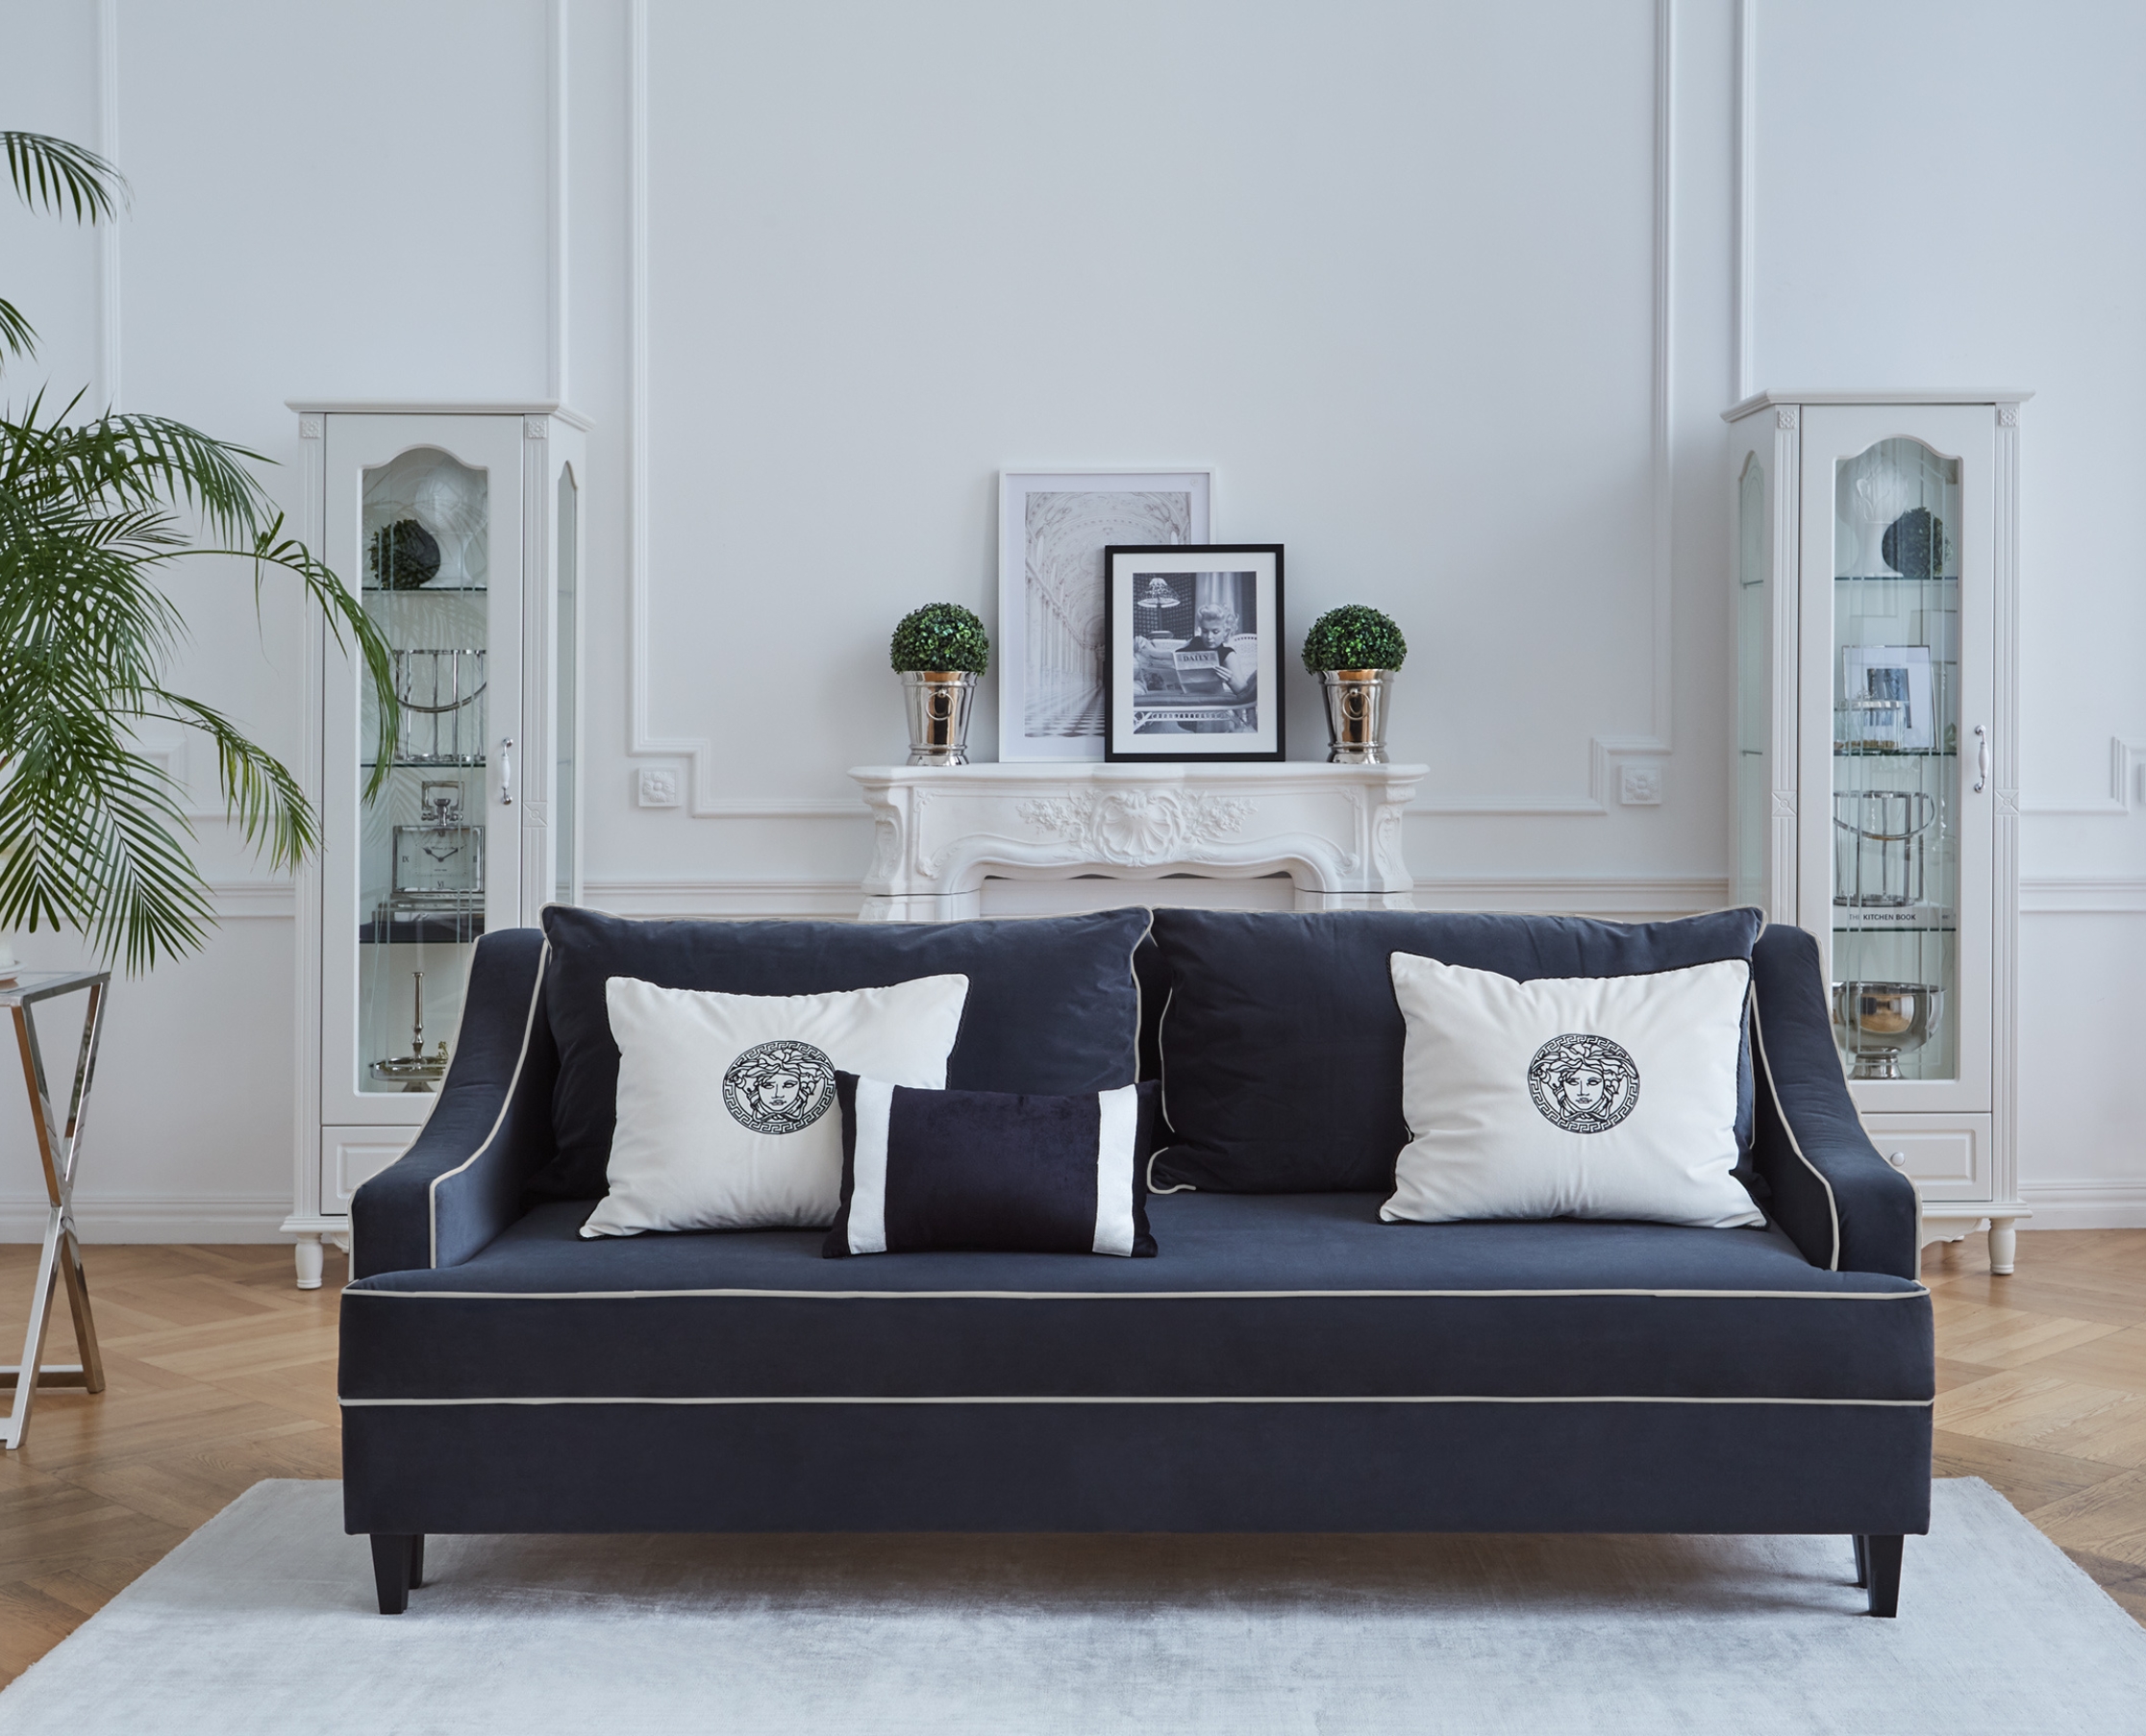 Wohnzimmersofas, wie man die perfekte Couch auswählt